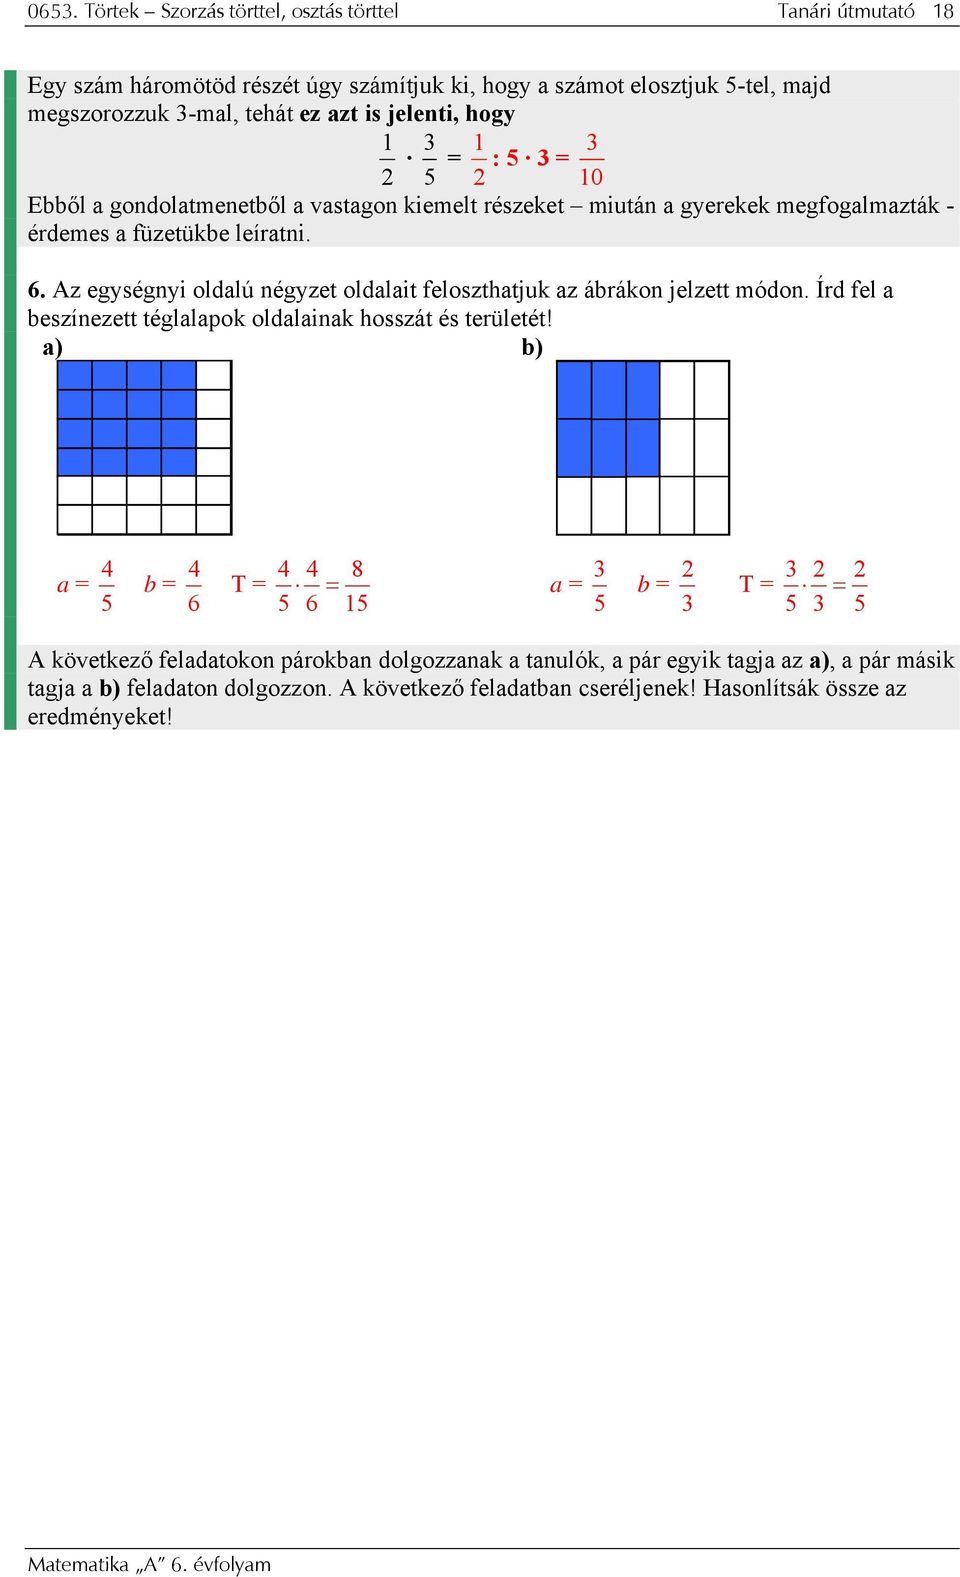 Az egységnyi oldalú négyzet oldalait feloszthatjuk az ábrákon jelzett módon. Írd fel a beszínezett téglalapok oldalainak hosszát és területét!